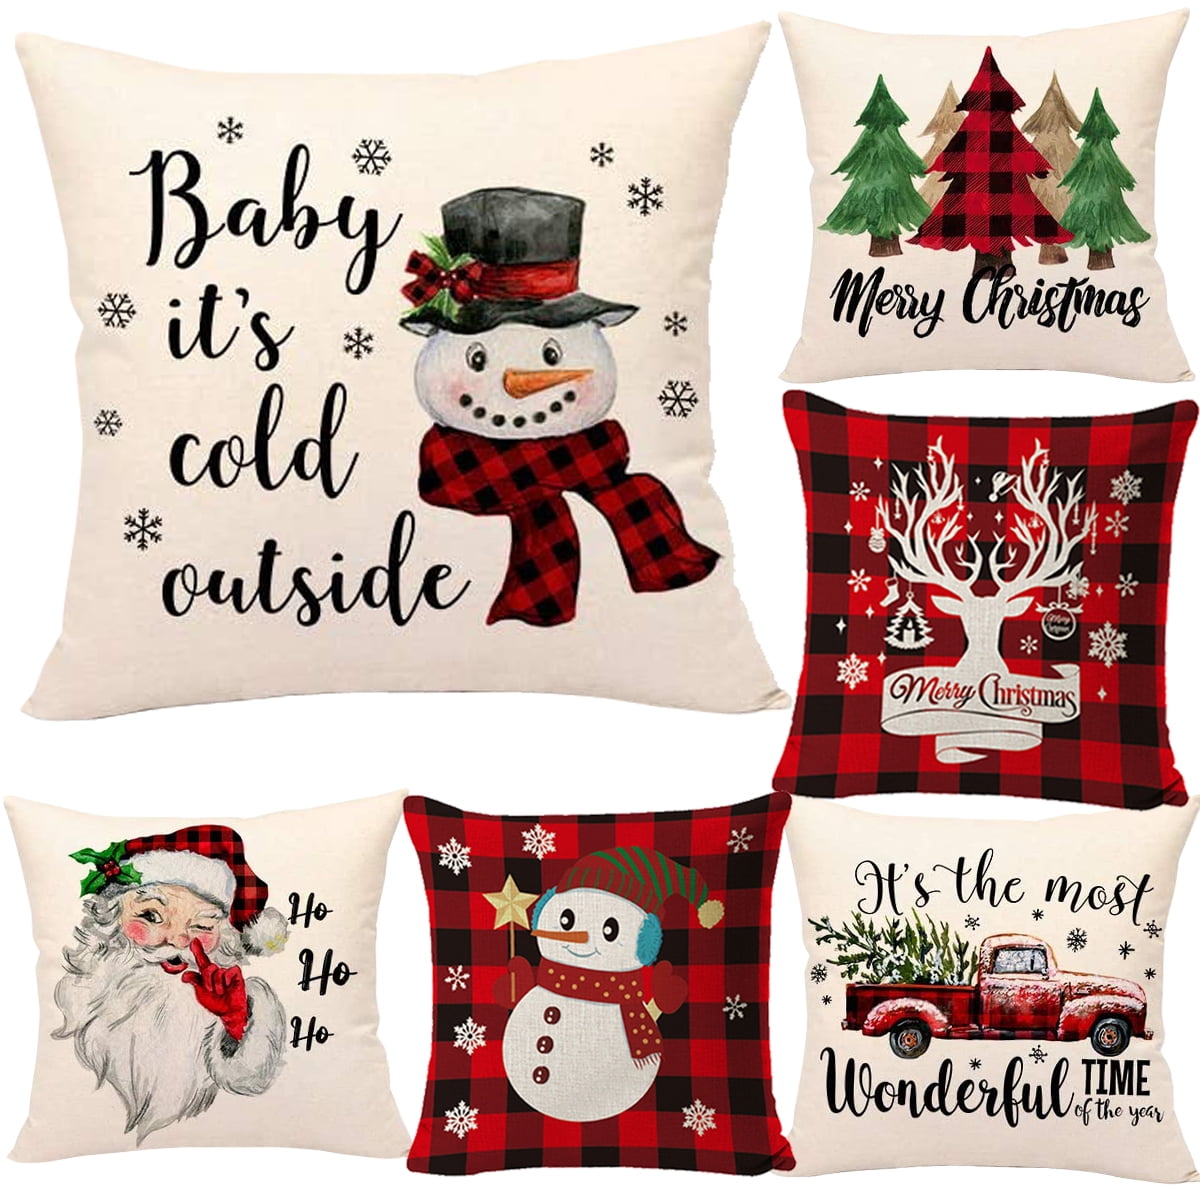 New Christmas Santa Pillow Case Cushion Cover Xmas Home Decor Cotton 72x44cm 